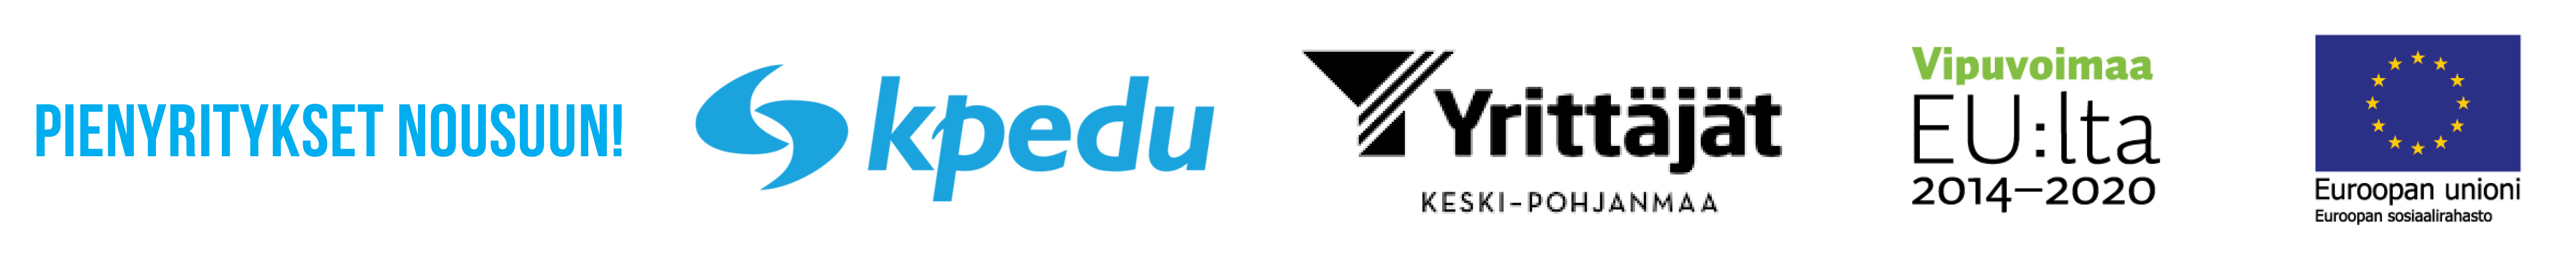 Toteuttajien logot: Kpedu, Keski-Pohjanmaan Yrittäjät ry, Vipuvoimaa EU:lta, Euroopan unioni Euroopan sosiaalirahasto